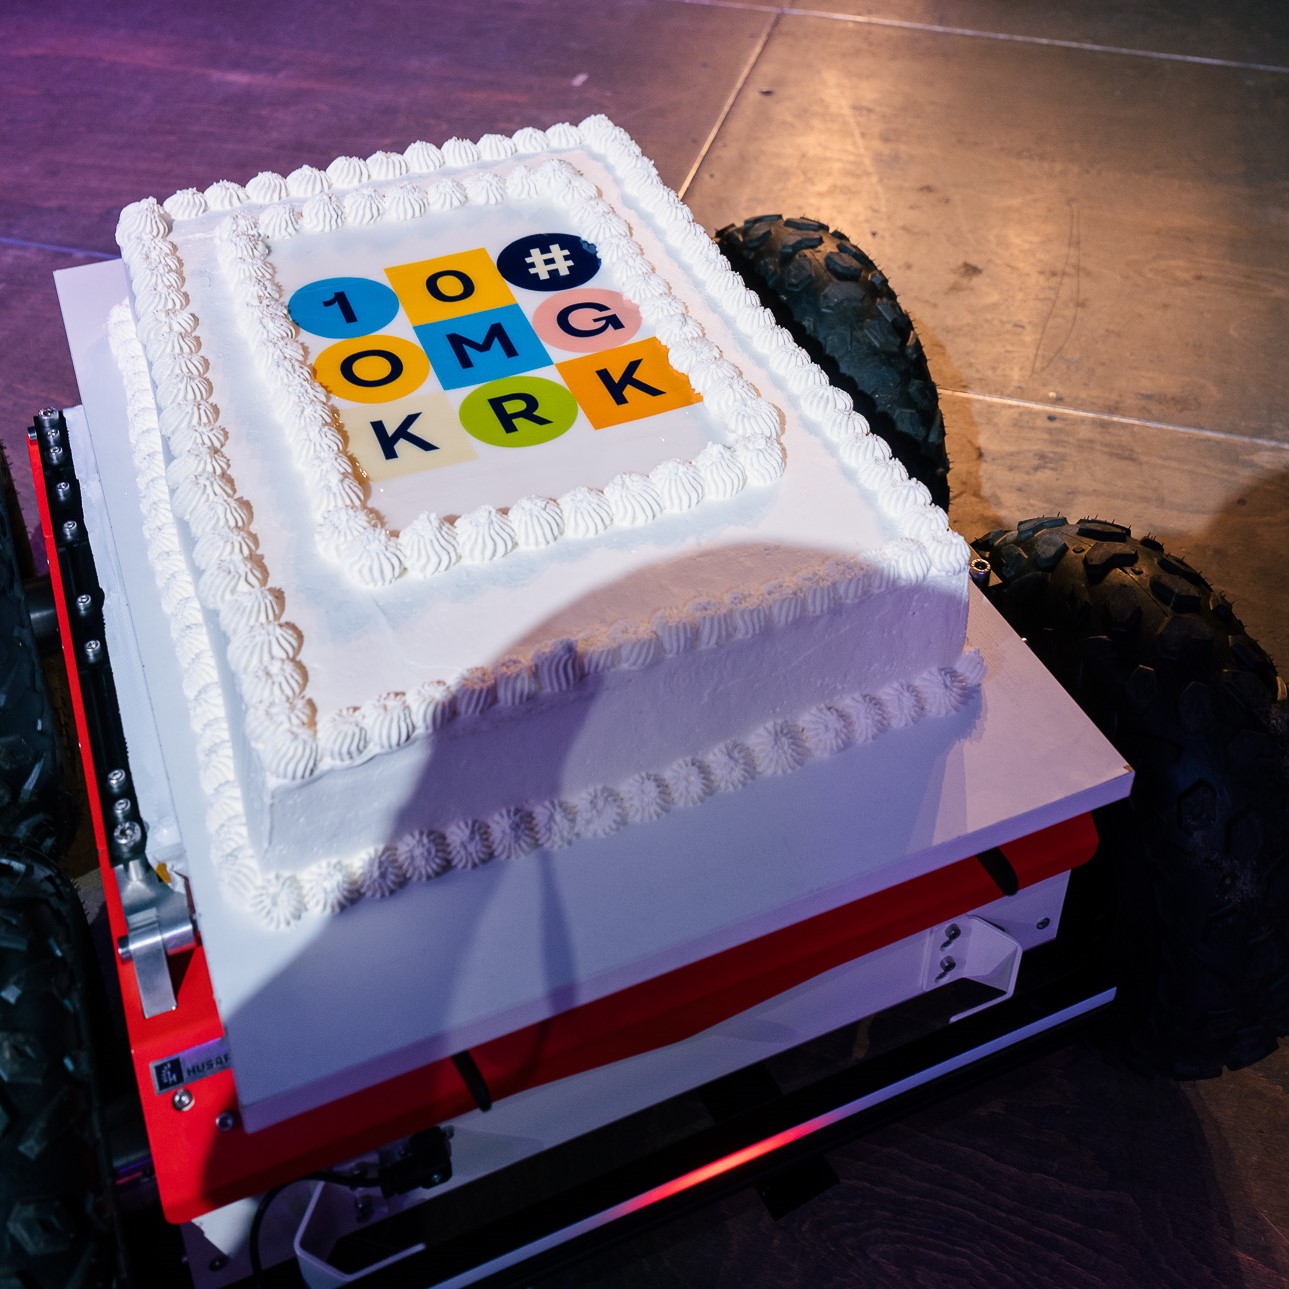 Cake 10th anniversary